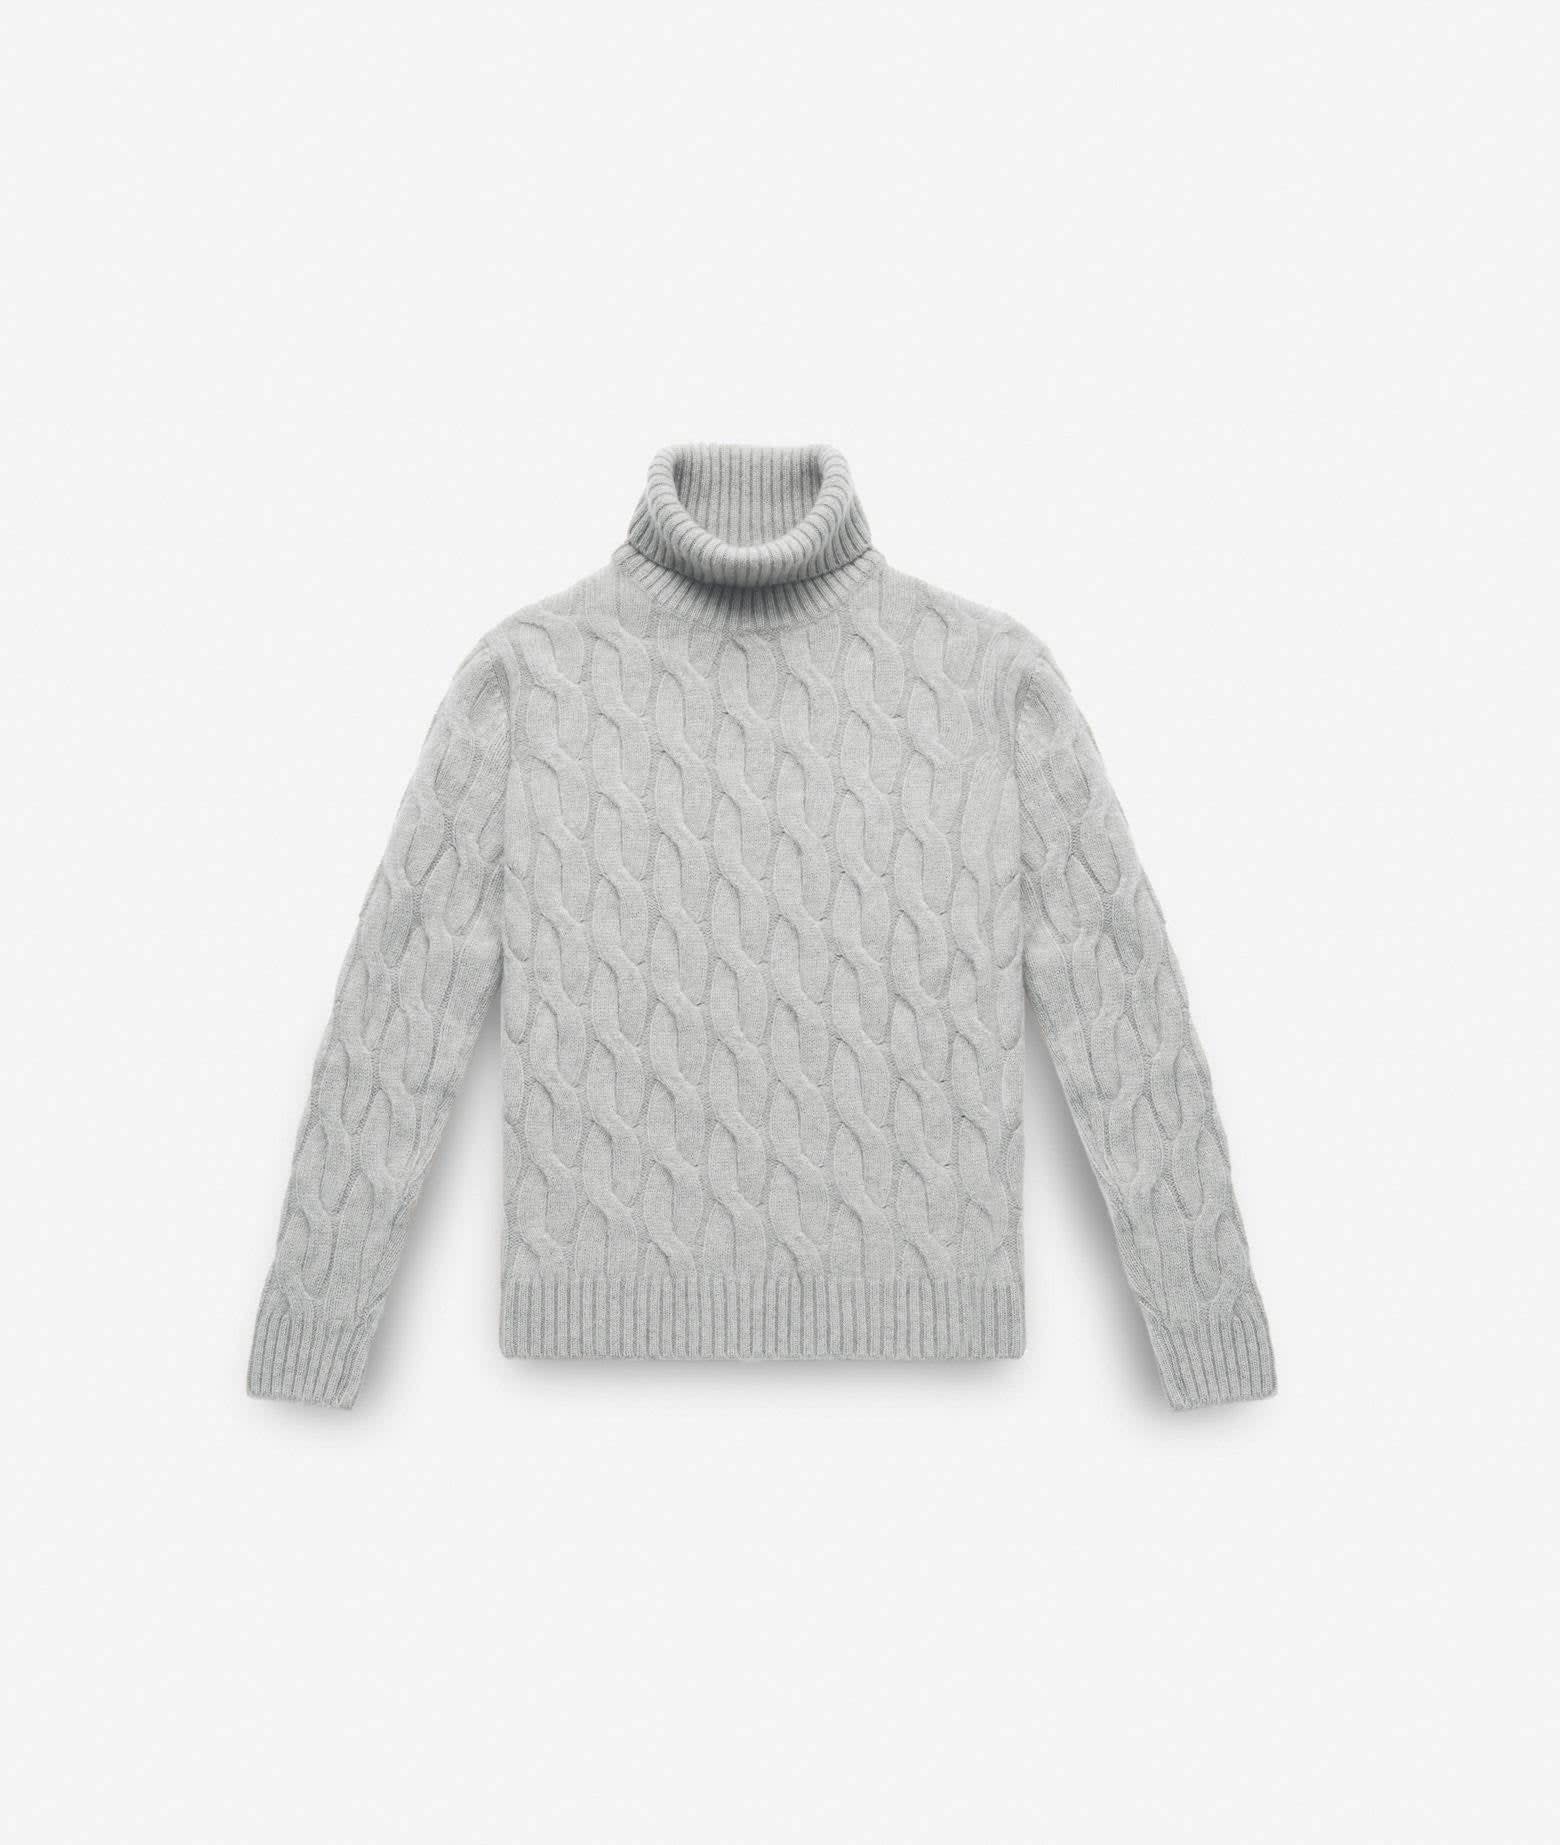 Turtleneck Sweater col Du Pillon Sweater